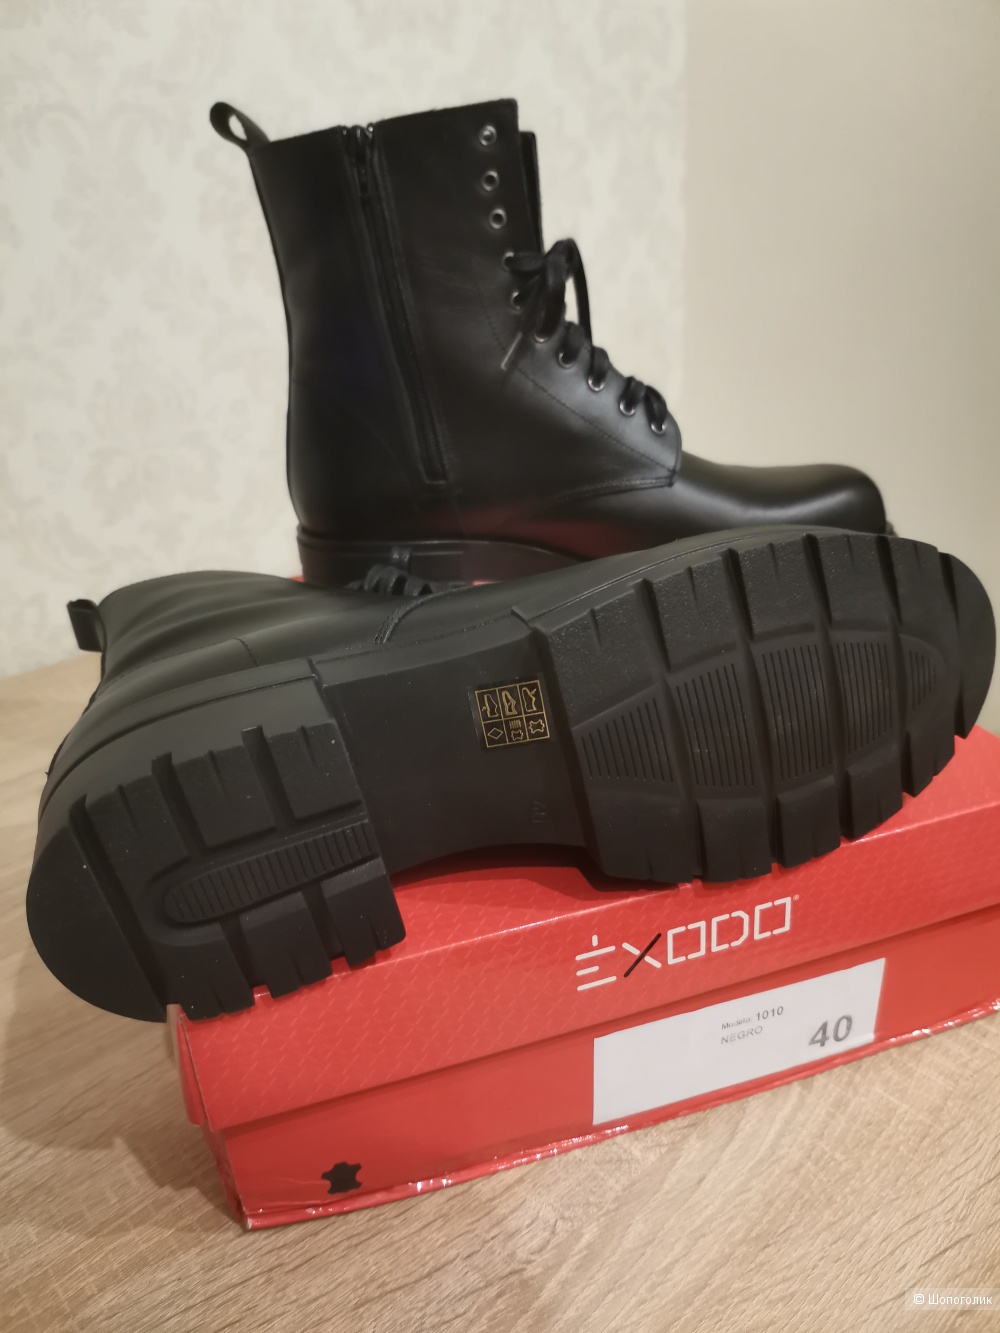 Ботинки Exodo, размер 40